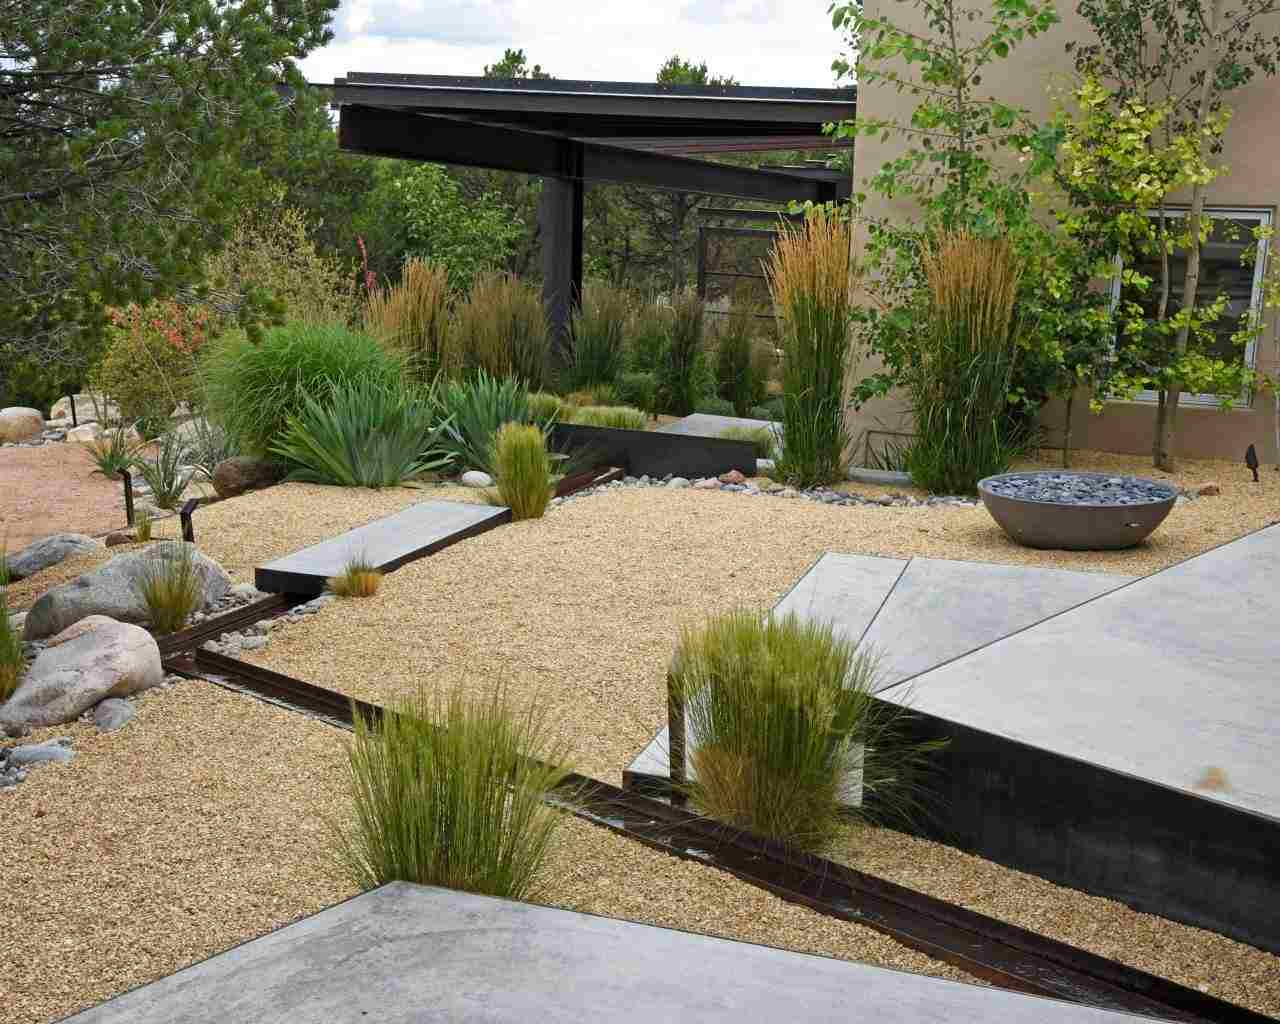 Platten für die Gartengestaltung mit Beton und Kies schaffen einen Steingarten